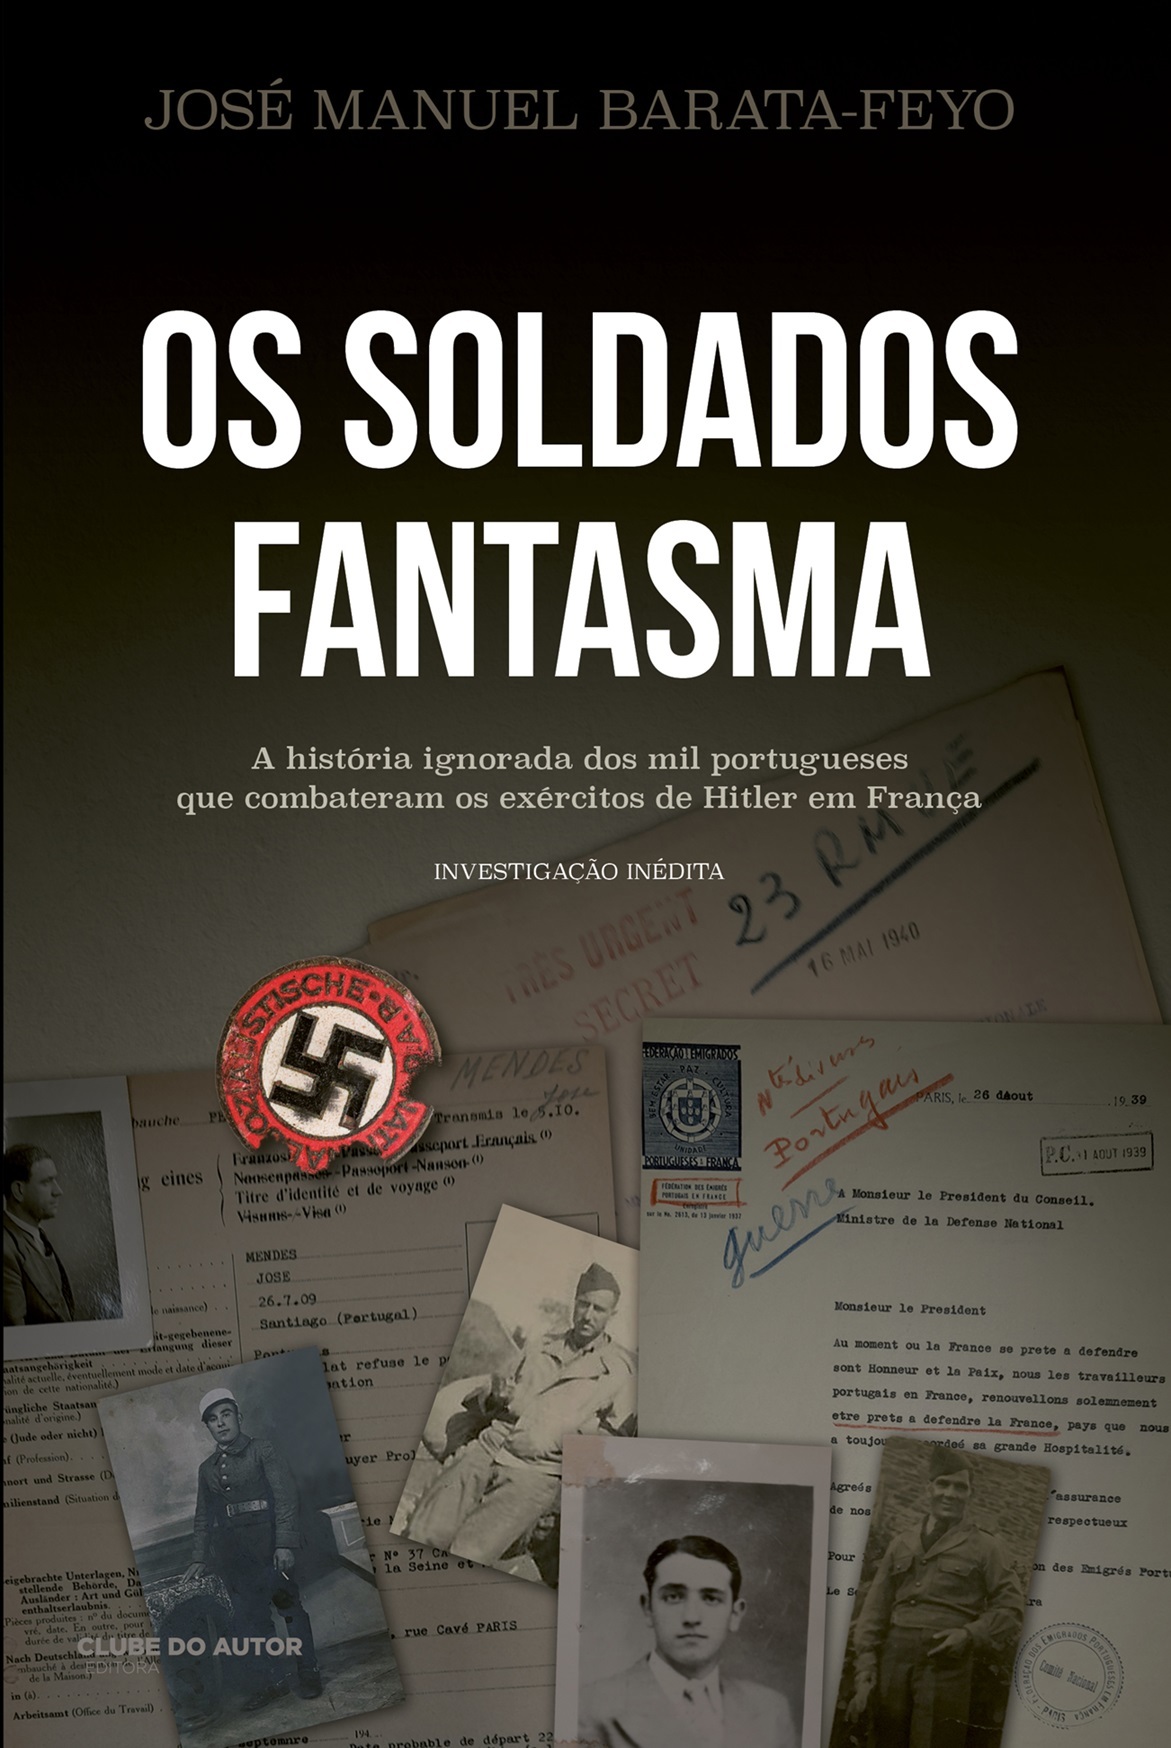 Livro de memórias da escola João da Costa Viana será lançado na